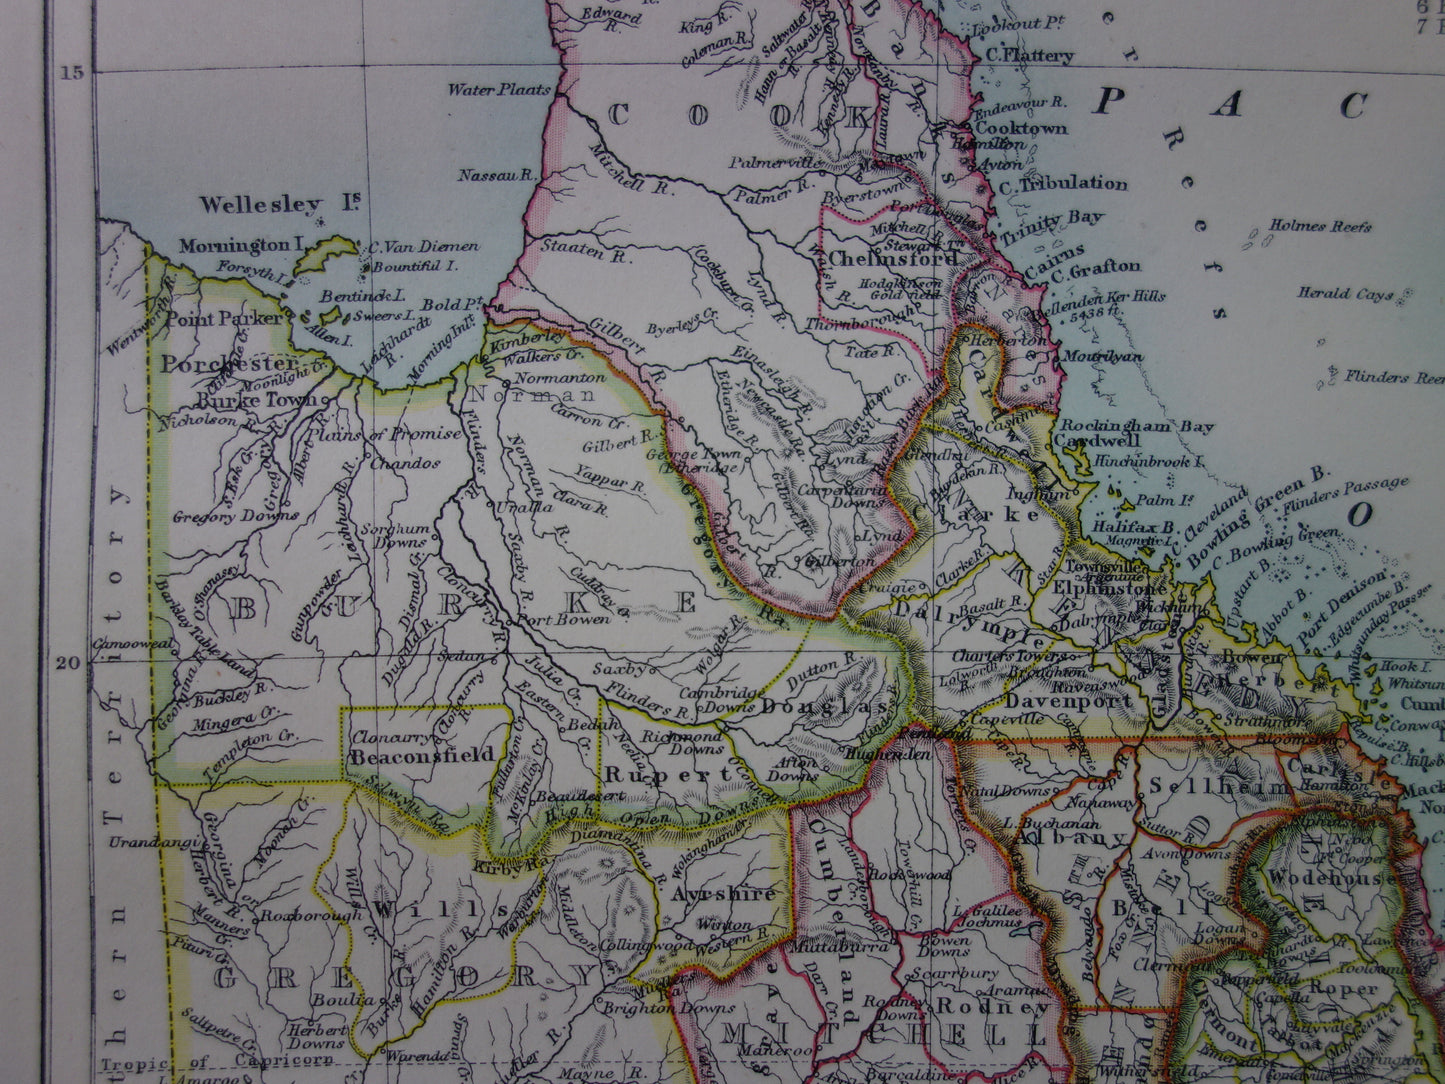 QUEENSLAND oude kaart van QLD Australië 1886 originele antieke Engelse landkaart Brisbane